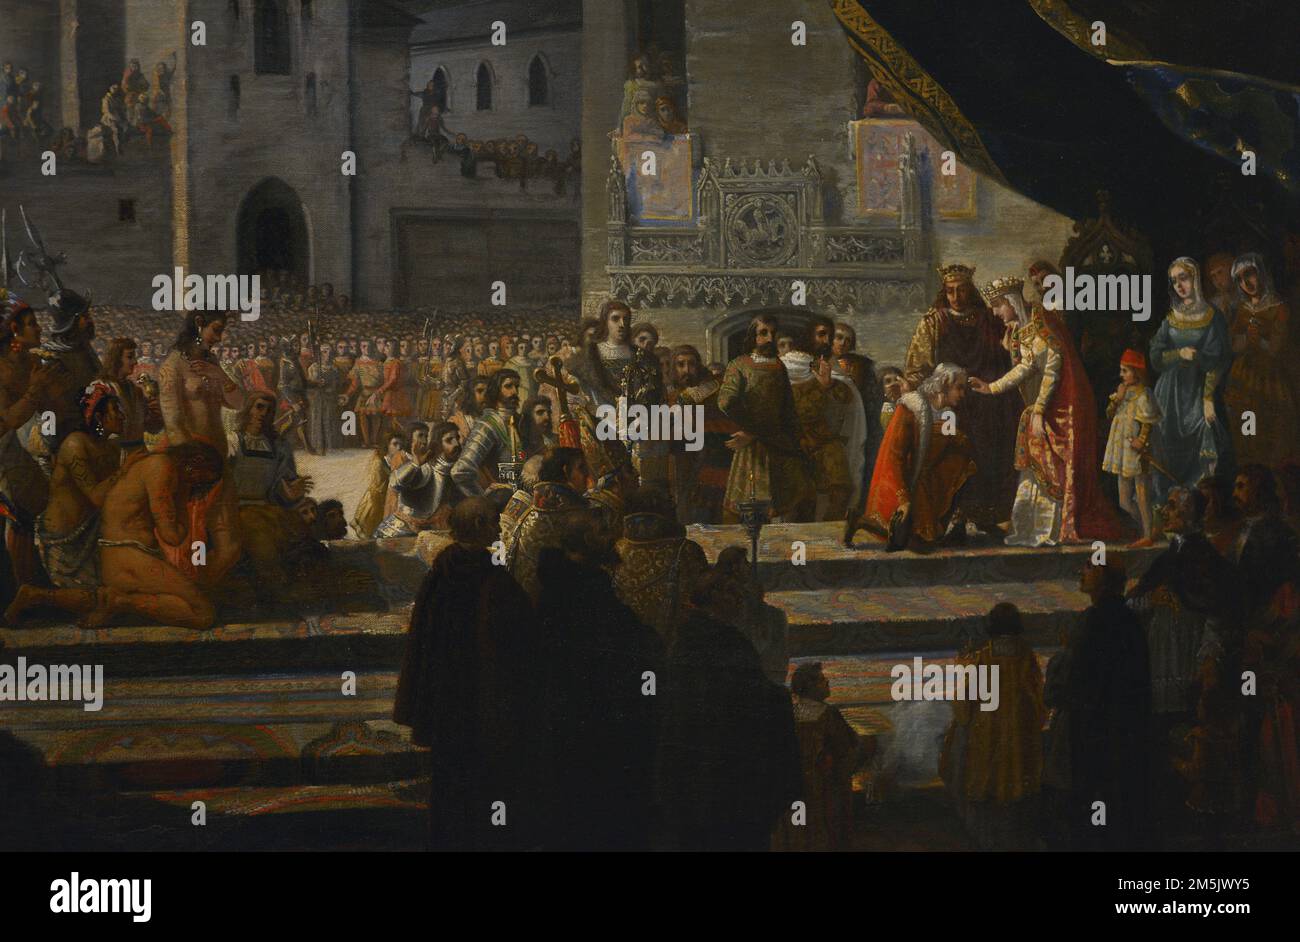 Kolumbus empfangen von den katholischen Monarchen in Barcelona (April 1493). Öl auf Leinwand (111 x 144 cm) von Francisco Garcia Ibañez (geb. 1825), 1845. Detail. Armeemuseum. Toledo, Spanien. (Ausgeliehen vom Prado Museum, Spanien). Stockfoto